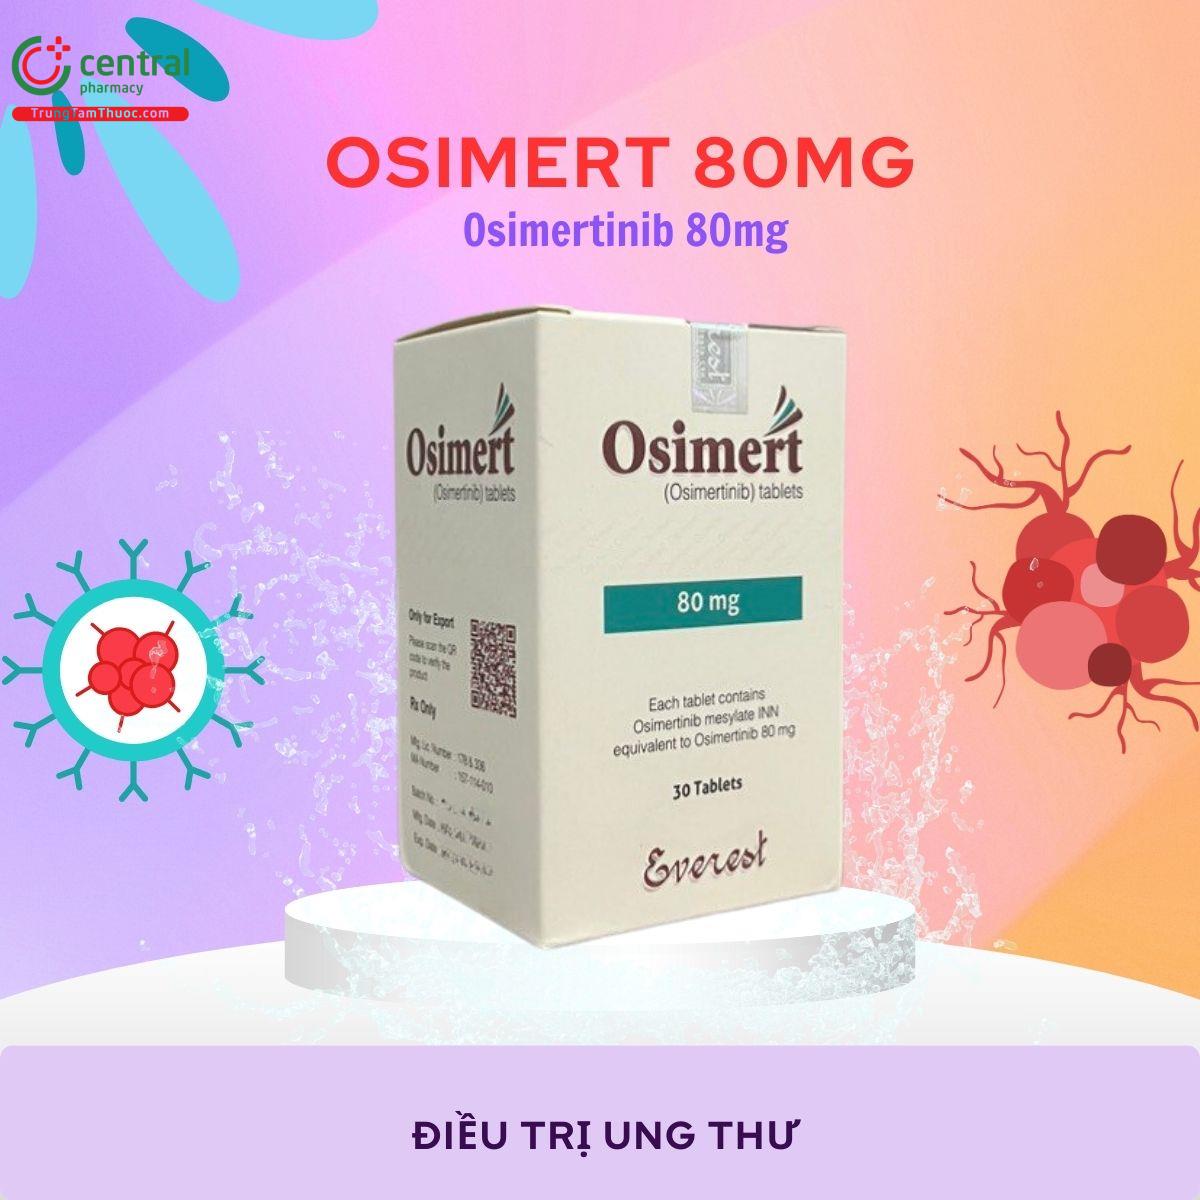 Thuốc Osimert 80mg điều trị ung thư phổi không tế bào nhỏ